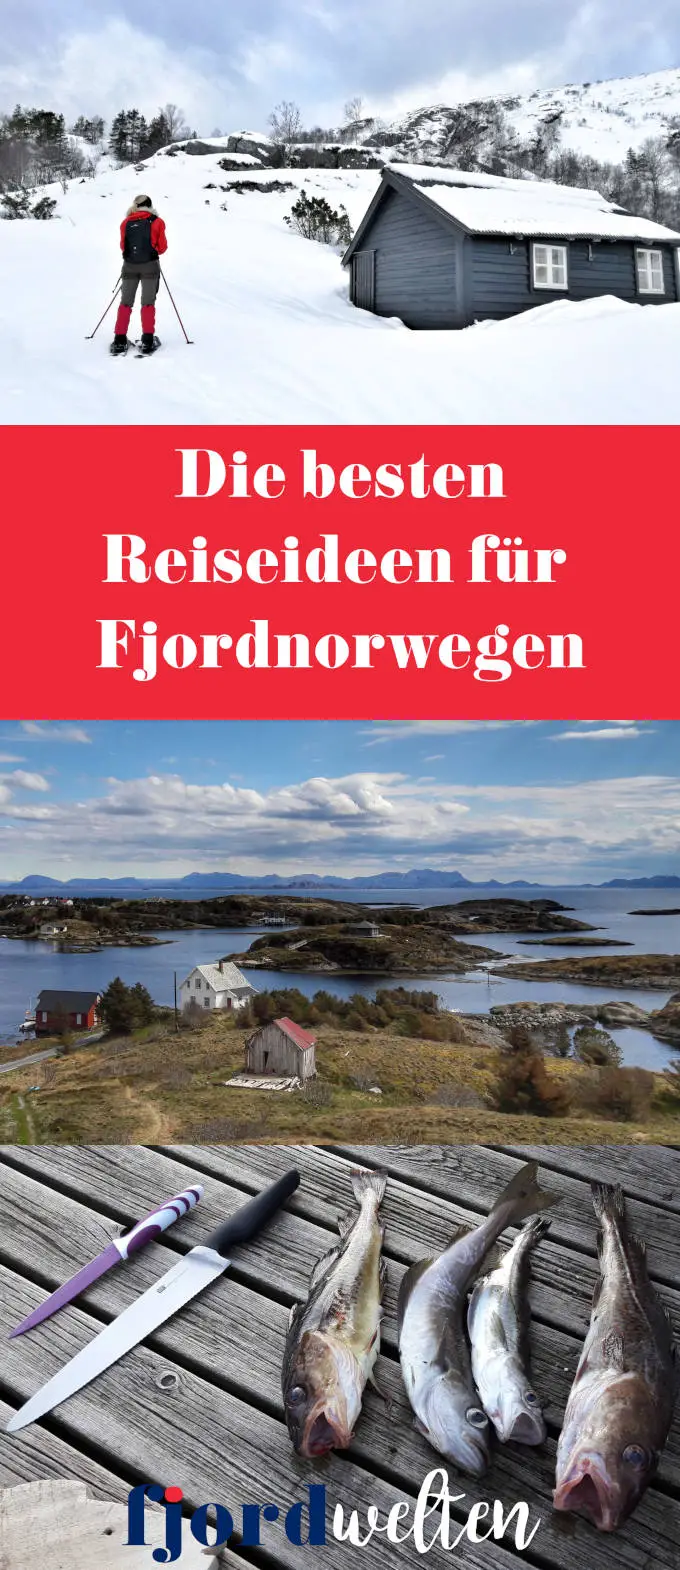 Reiseideen für Fjordnorwegen